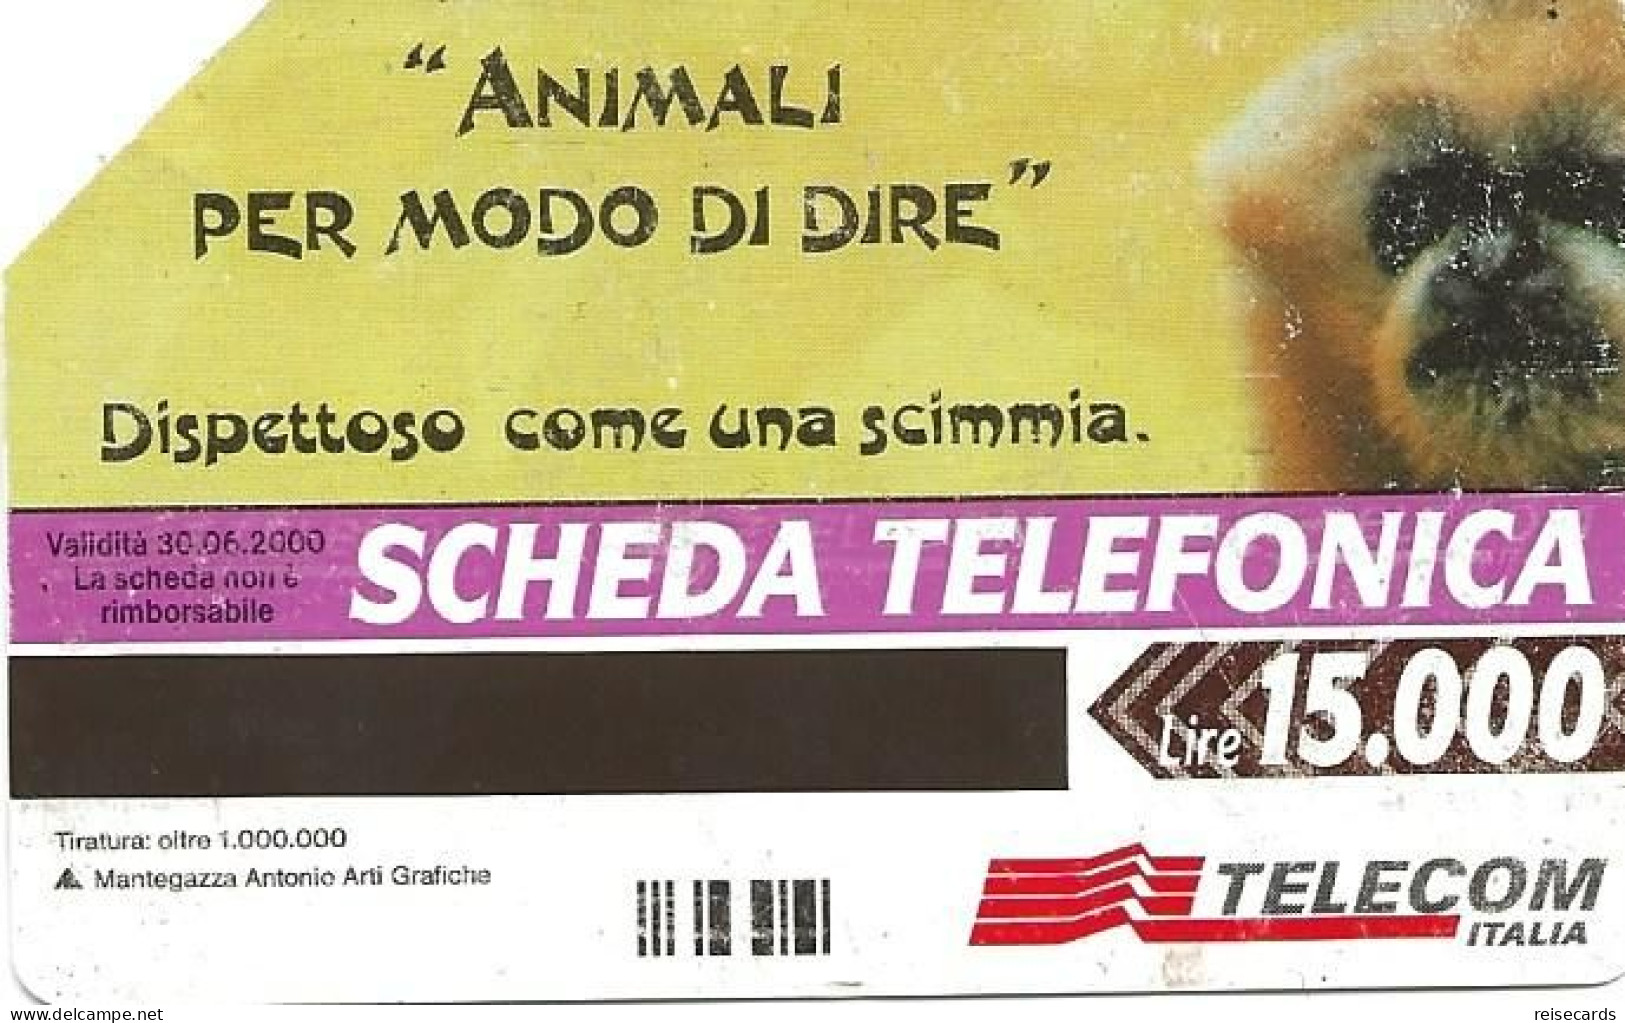 Italy: Telecom Italia - Animali Per Modo Di Dire - Öff. Werbe-TK